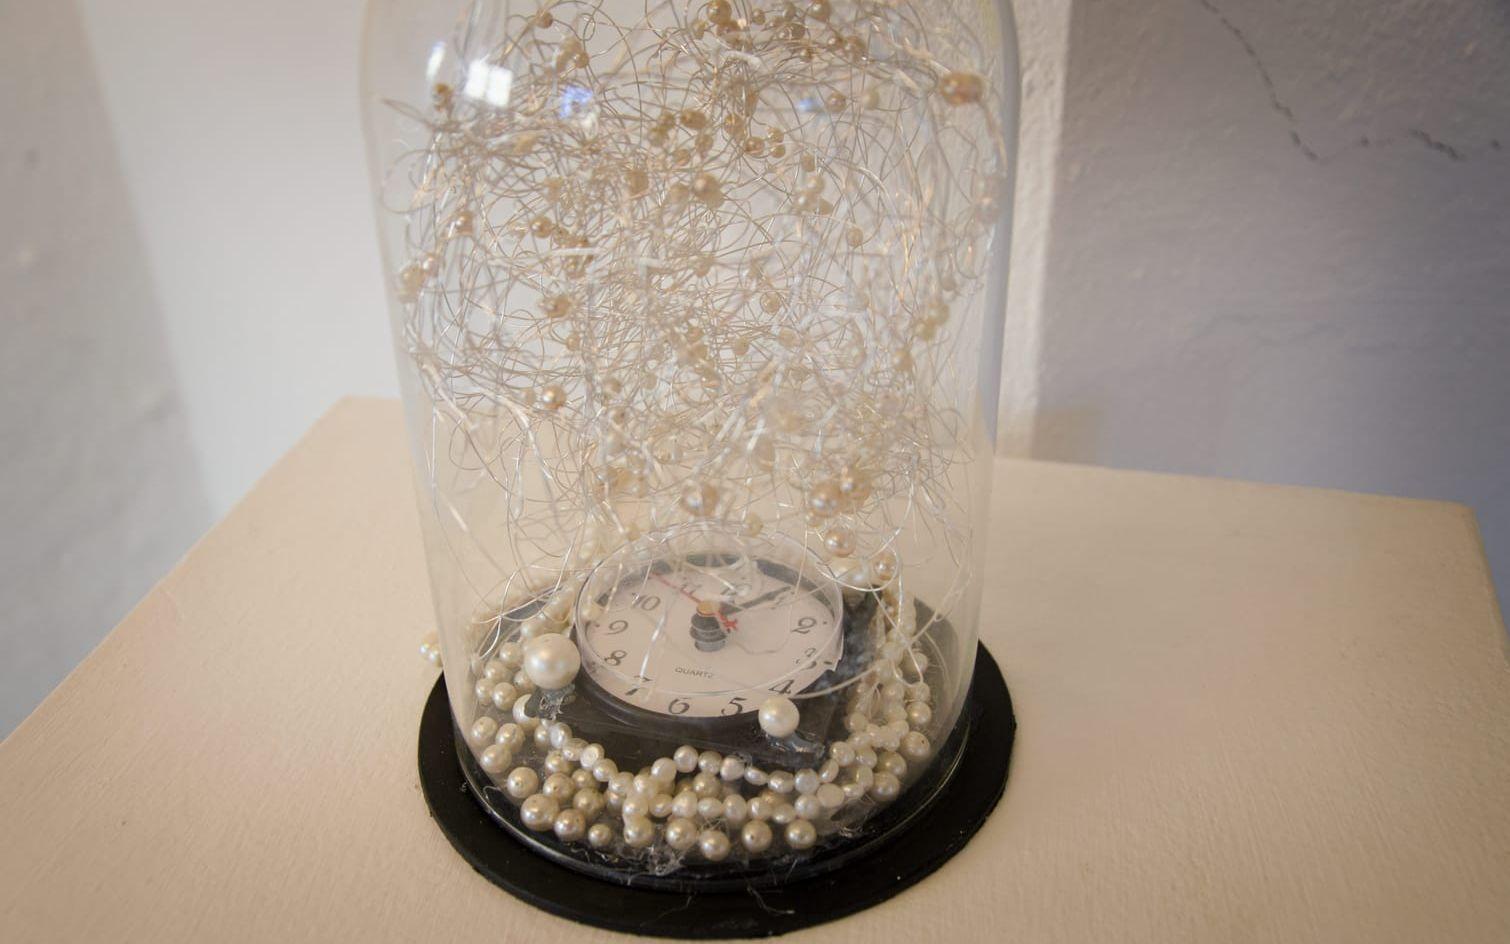 Gurlie Lindéns verk Tiden rinner i väg består av en tickande klocka i en glaskupa.